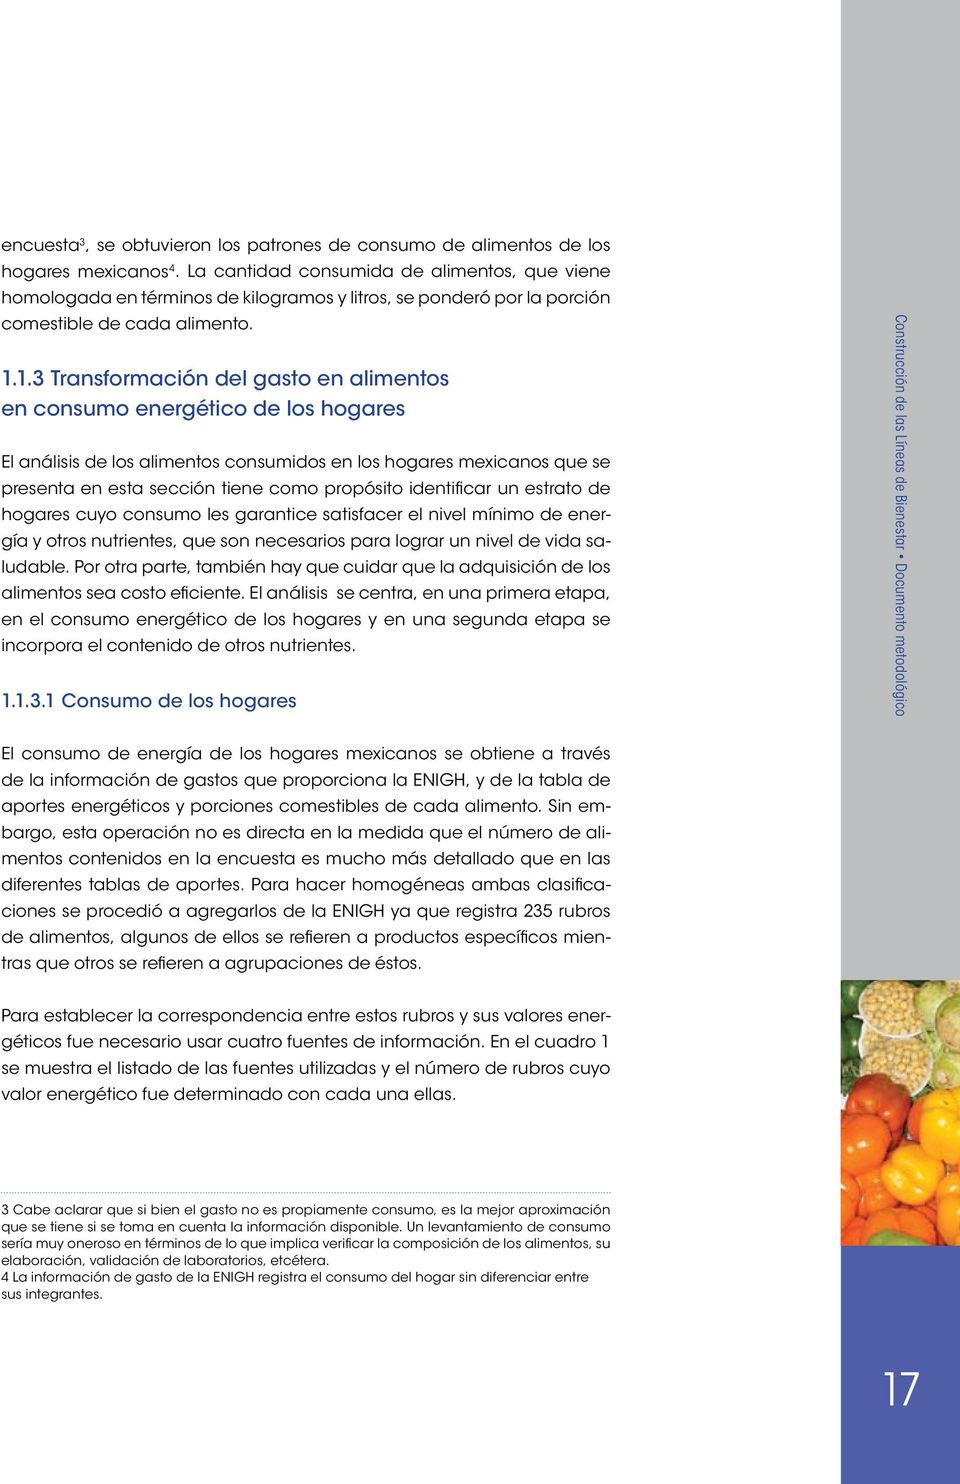 1.3 Transformación del gasto en alimentos en consumo energético de los hogares El análisis de los alimentos consumidos en los hogares mexicanos que se presenta en esta sección tiene como propósito